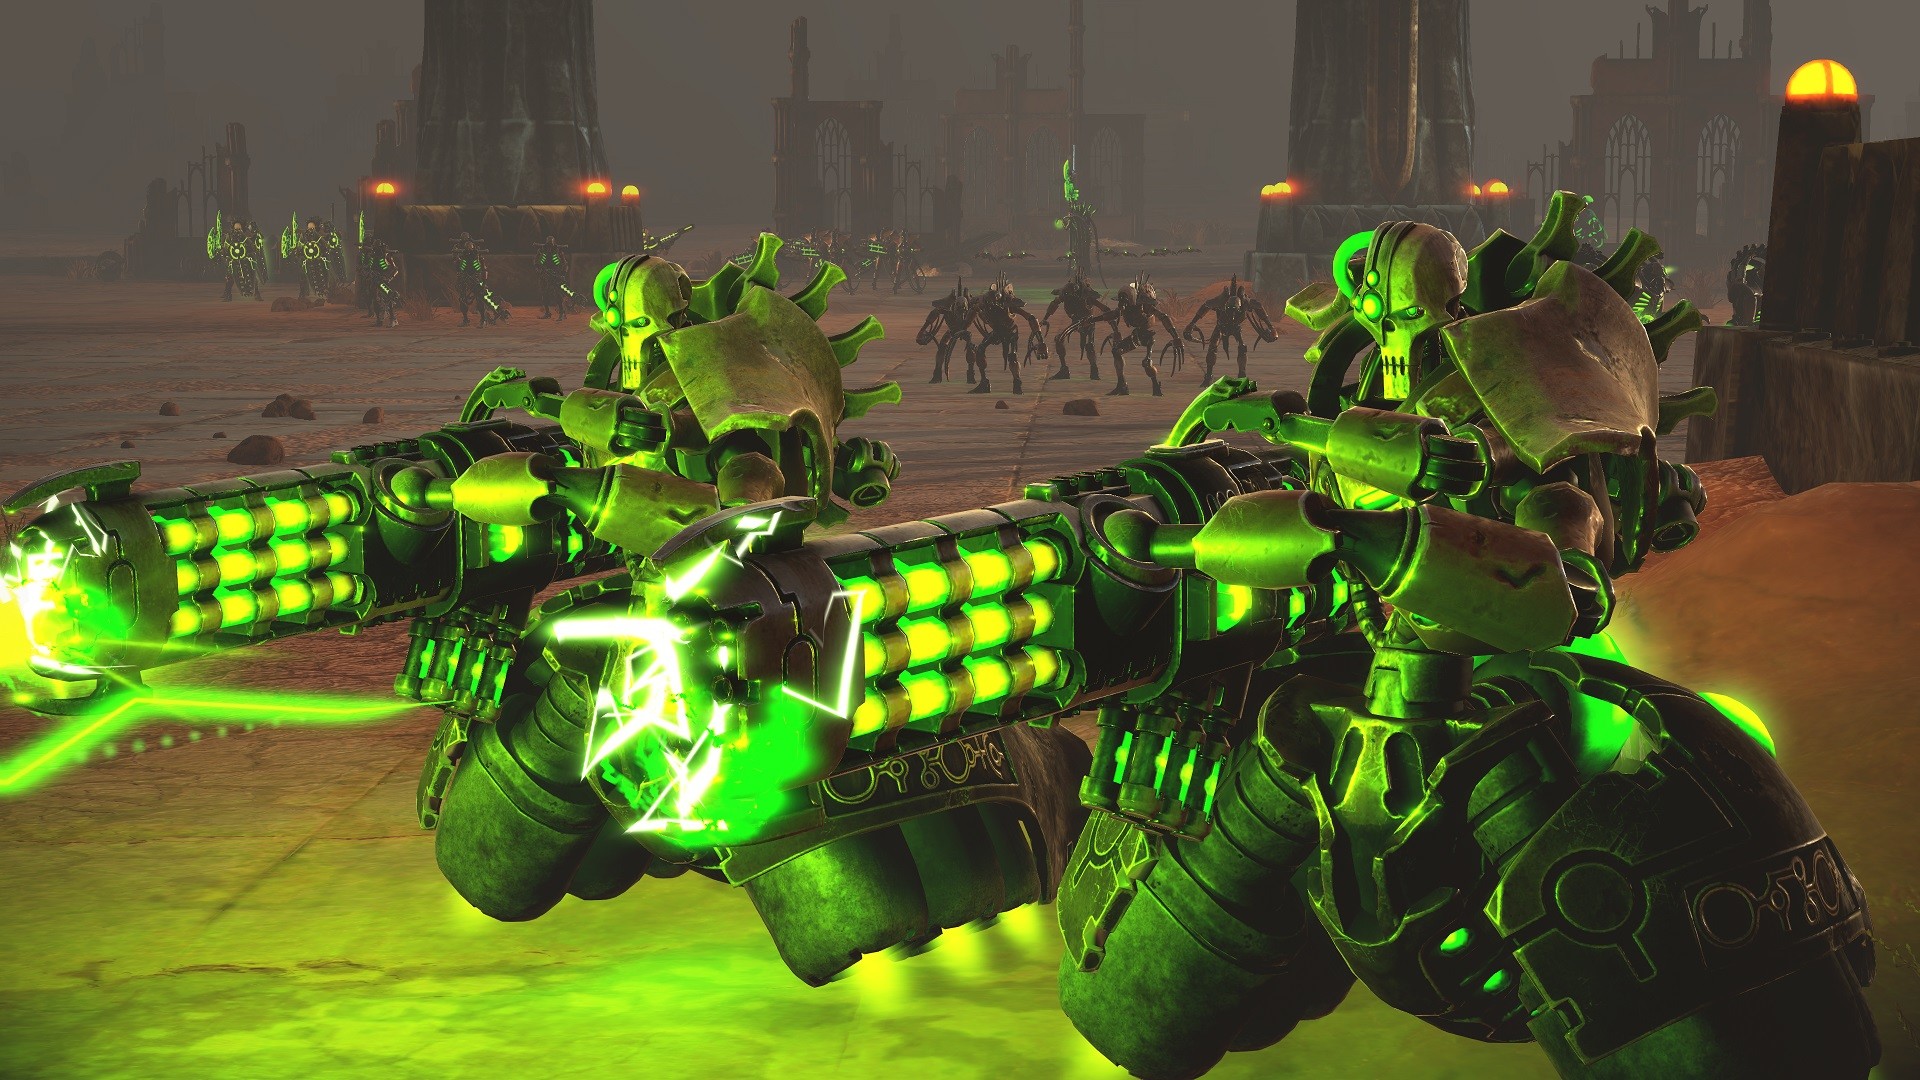 Warhammer 40,000: Battlesector - Necrons DLC Steam CD Key 8.6 usd